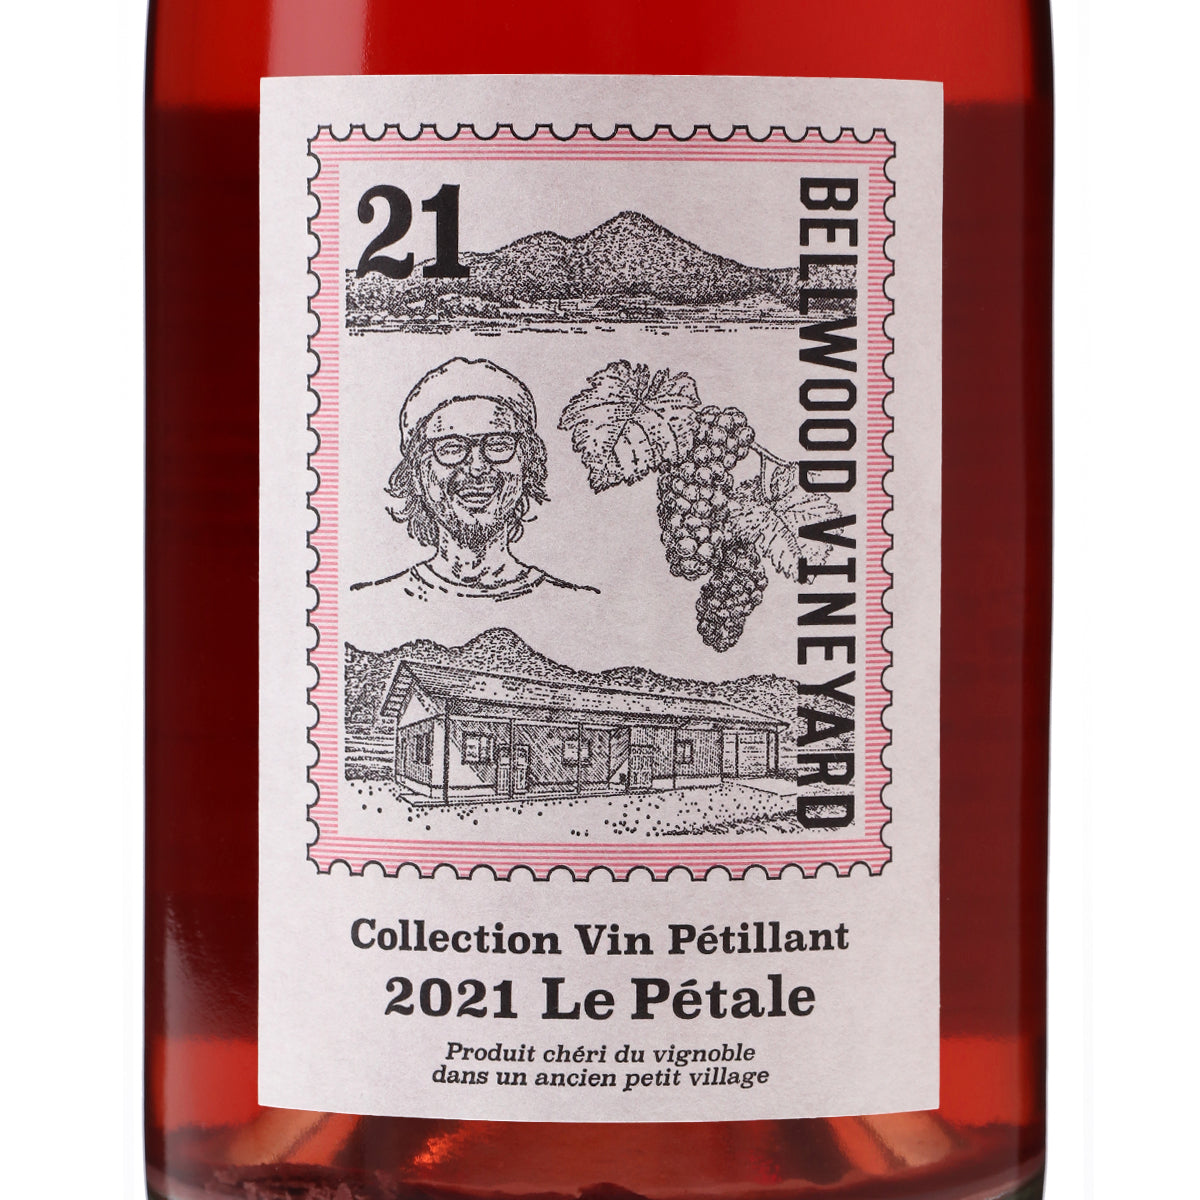 Collection Vin Petillant 2021 Le Pétale